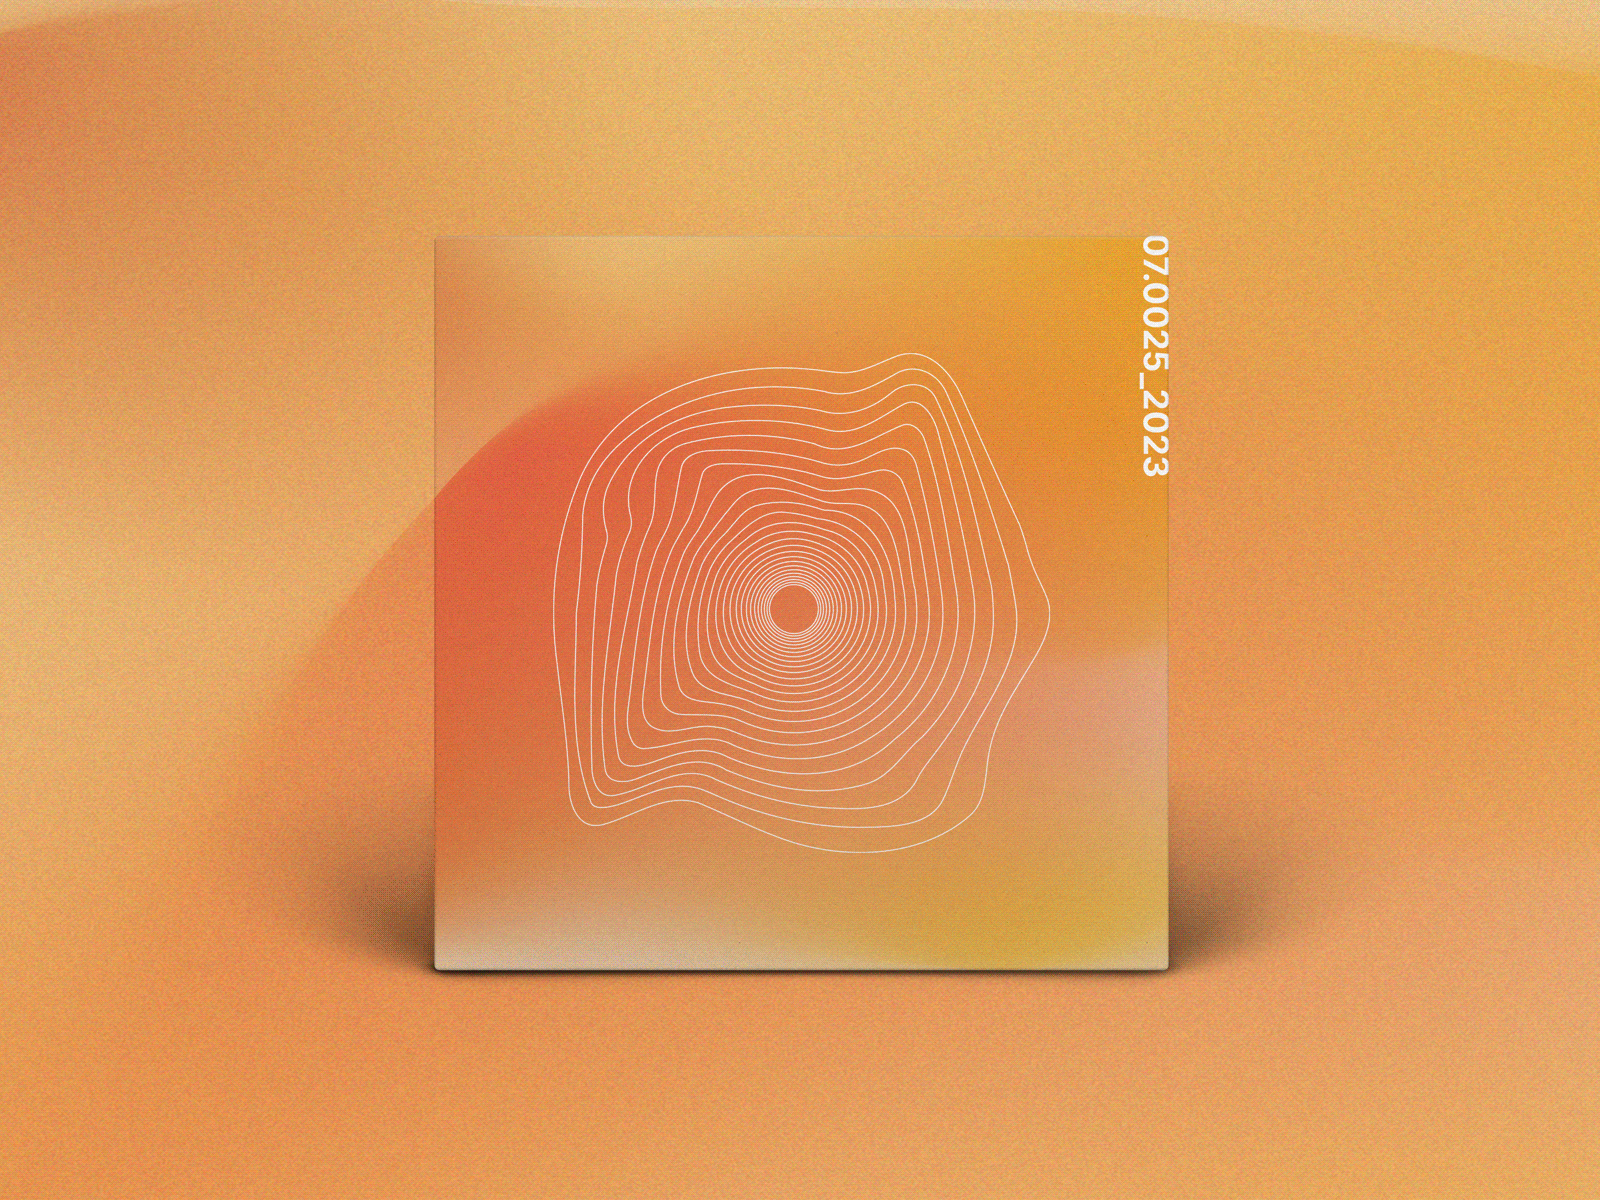 07.0025_2023 album cover art album cover design design graphic design mix music